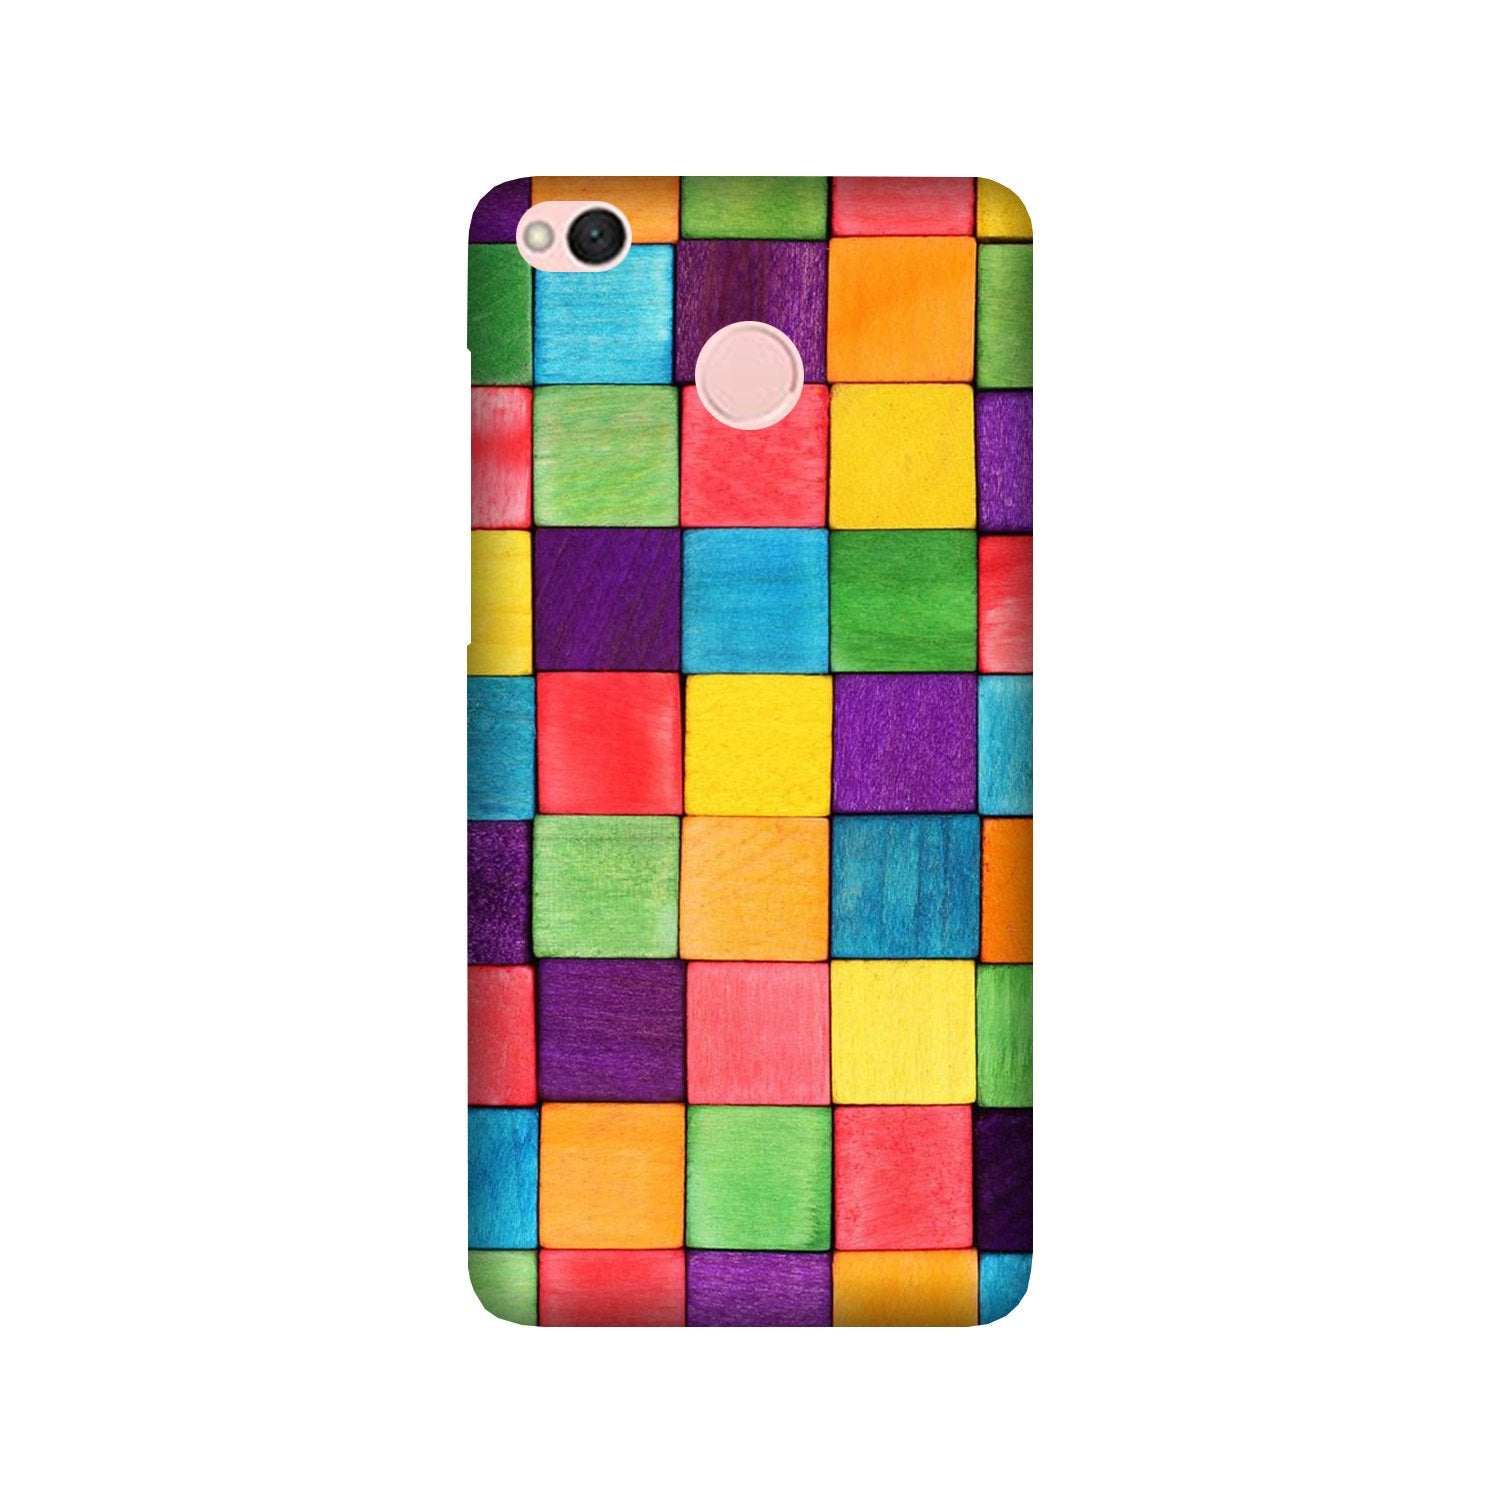 Colorful Square Case for Redmi 4 (Design No. 218)